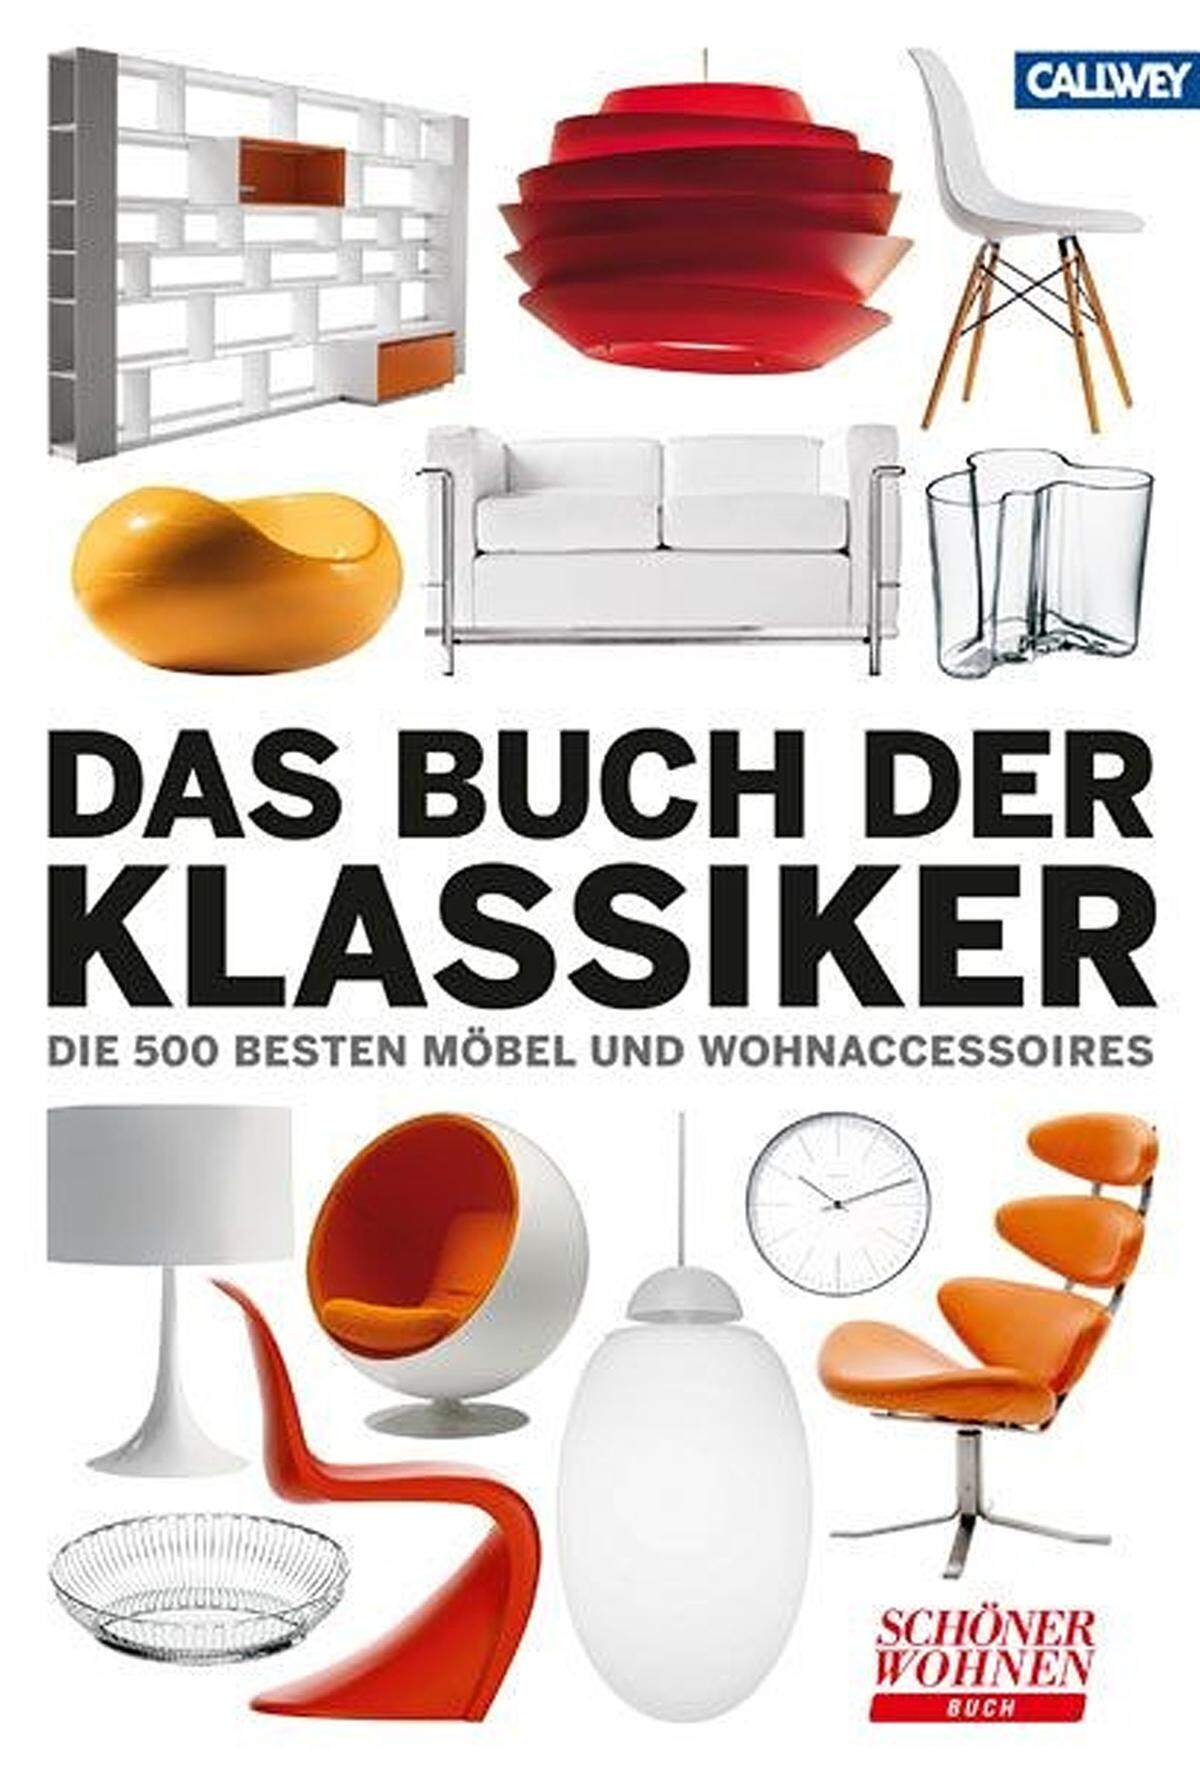 Die Presse - SchaufensterText: Norbert PhilippFotos: HerstellerTipp: Das Buch der Klassiker, 2011, Callwey Verlag.